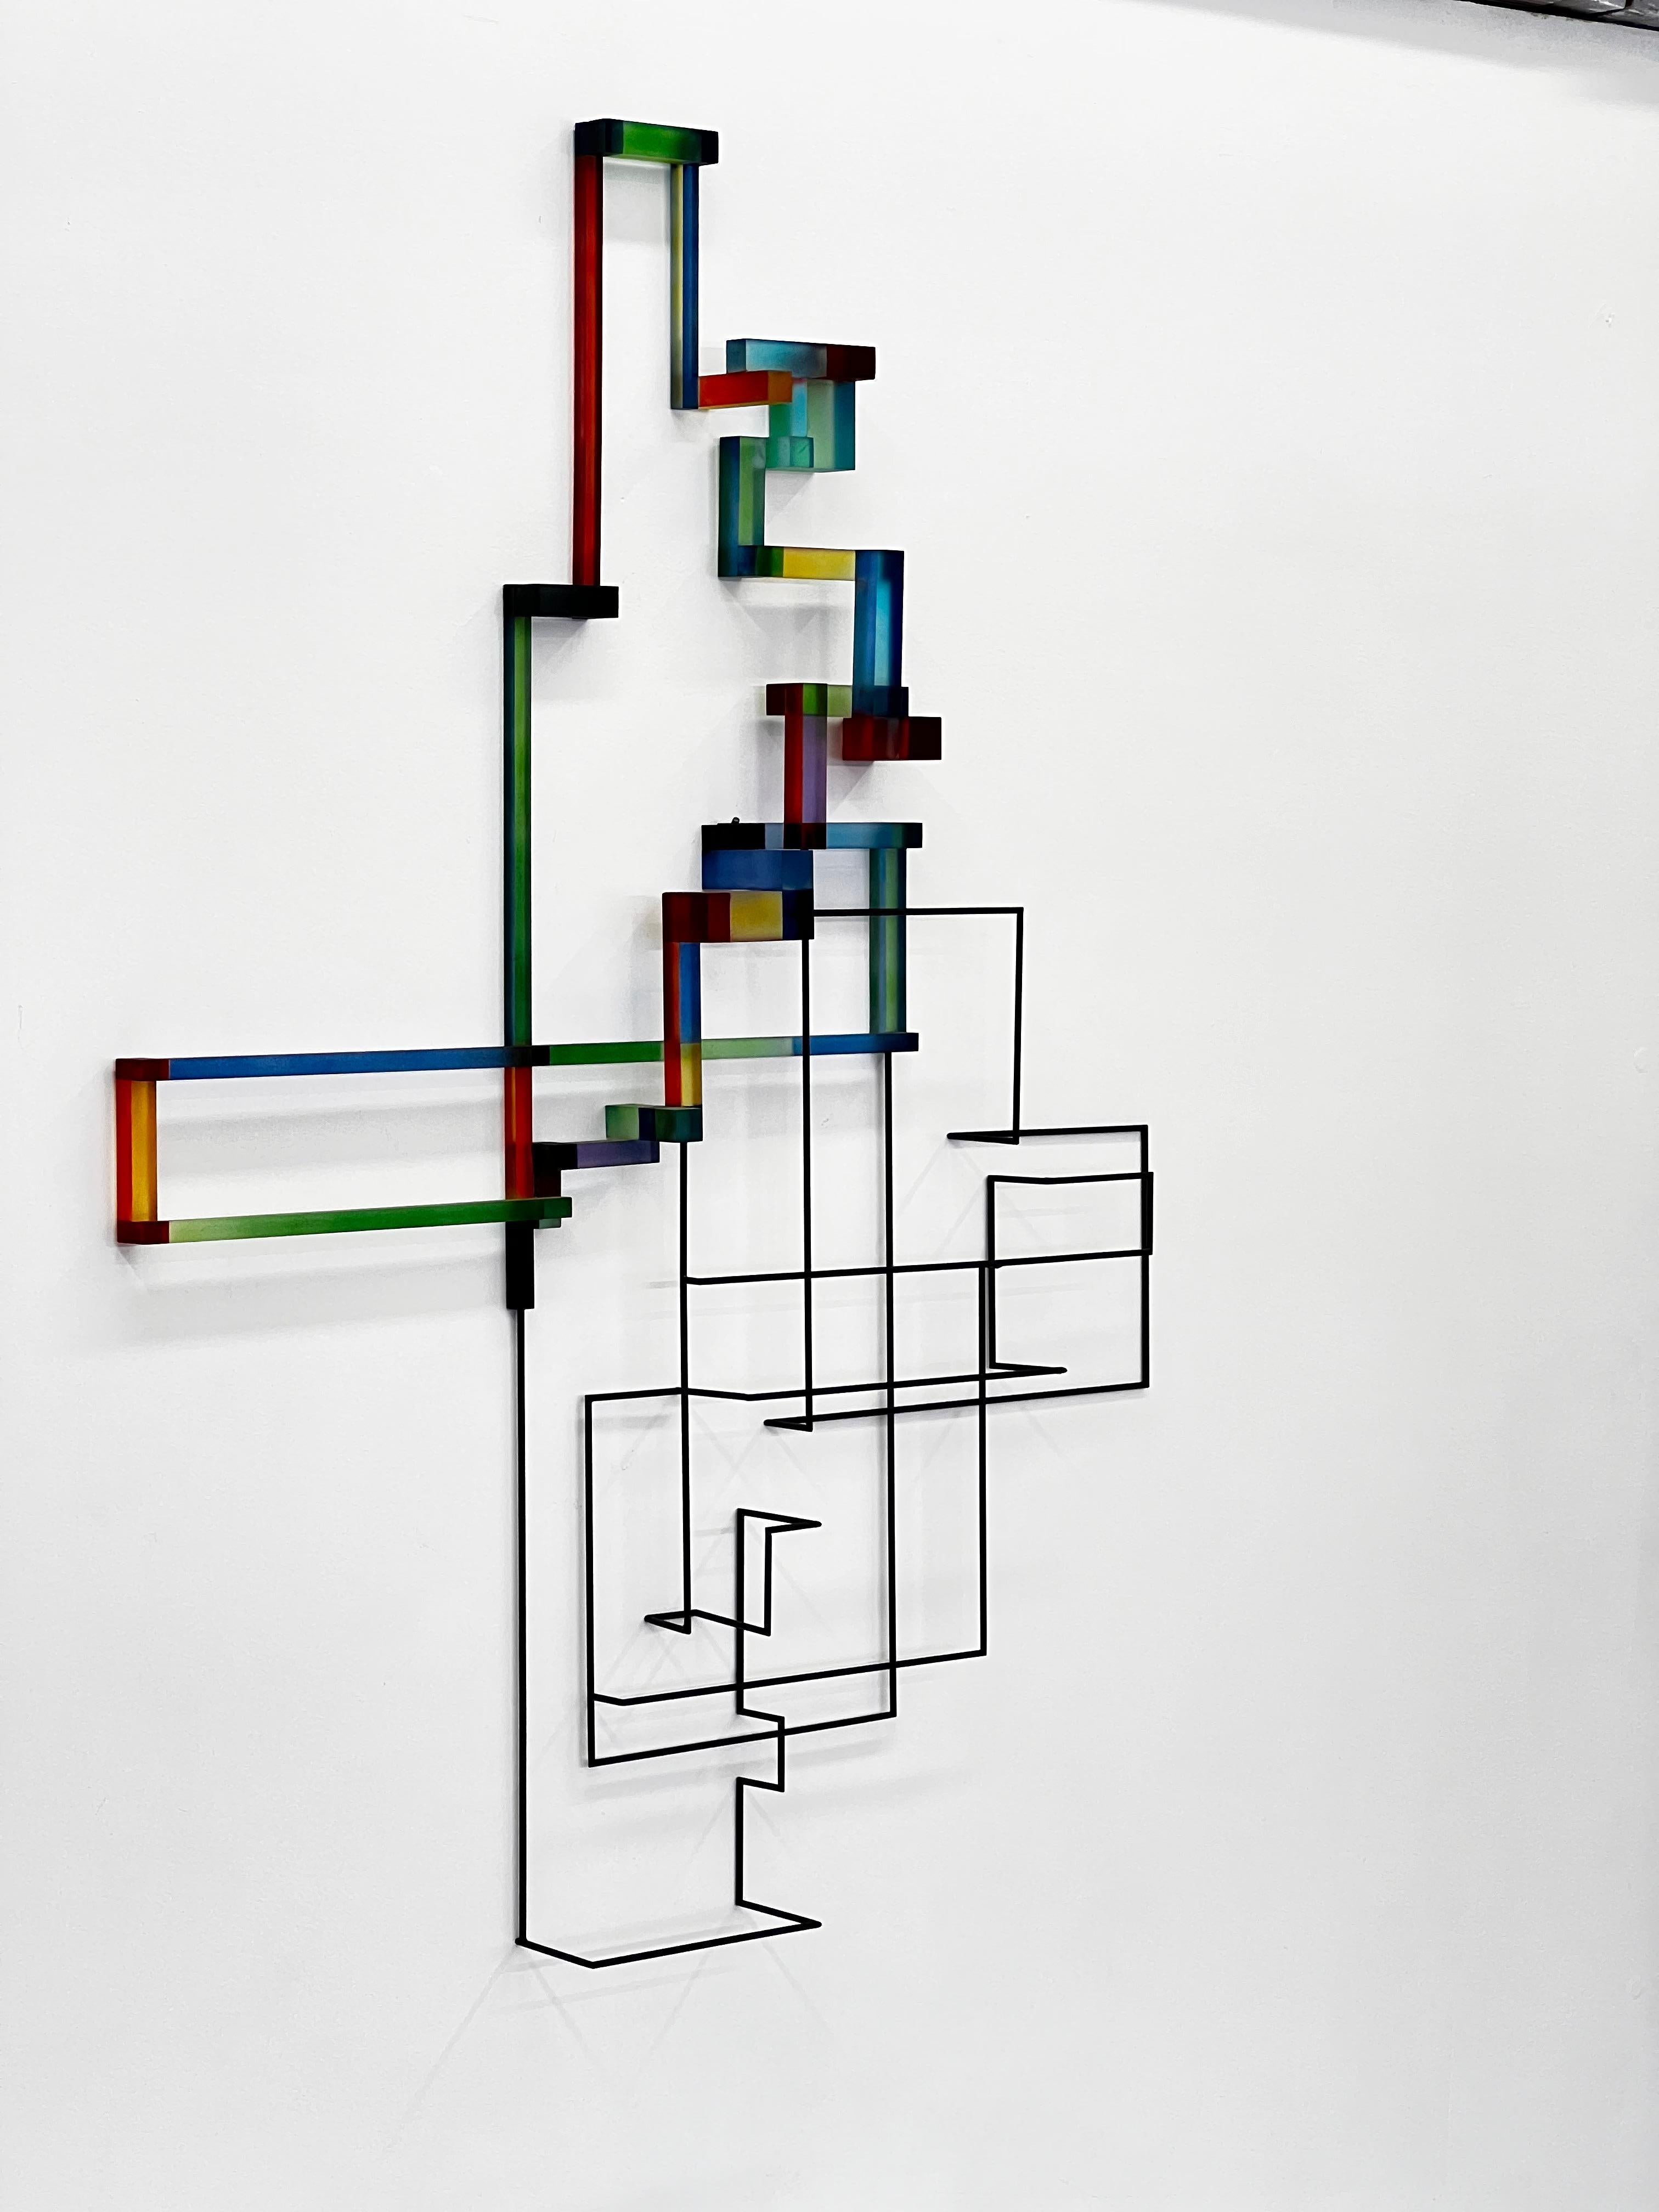 Henri Henri: zeitgenössische moderne abstrakte geometrische Skulptur (Geometrische Abstraktion), Sculpture, von Greg Chann